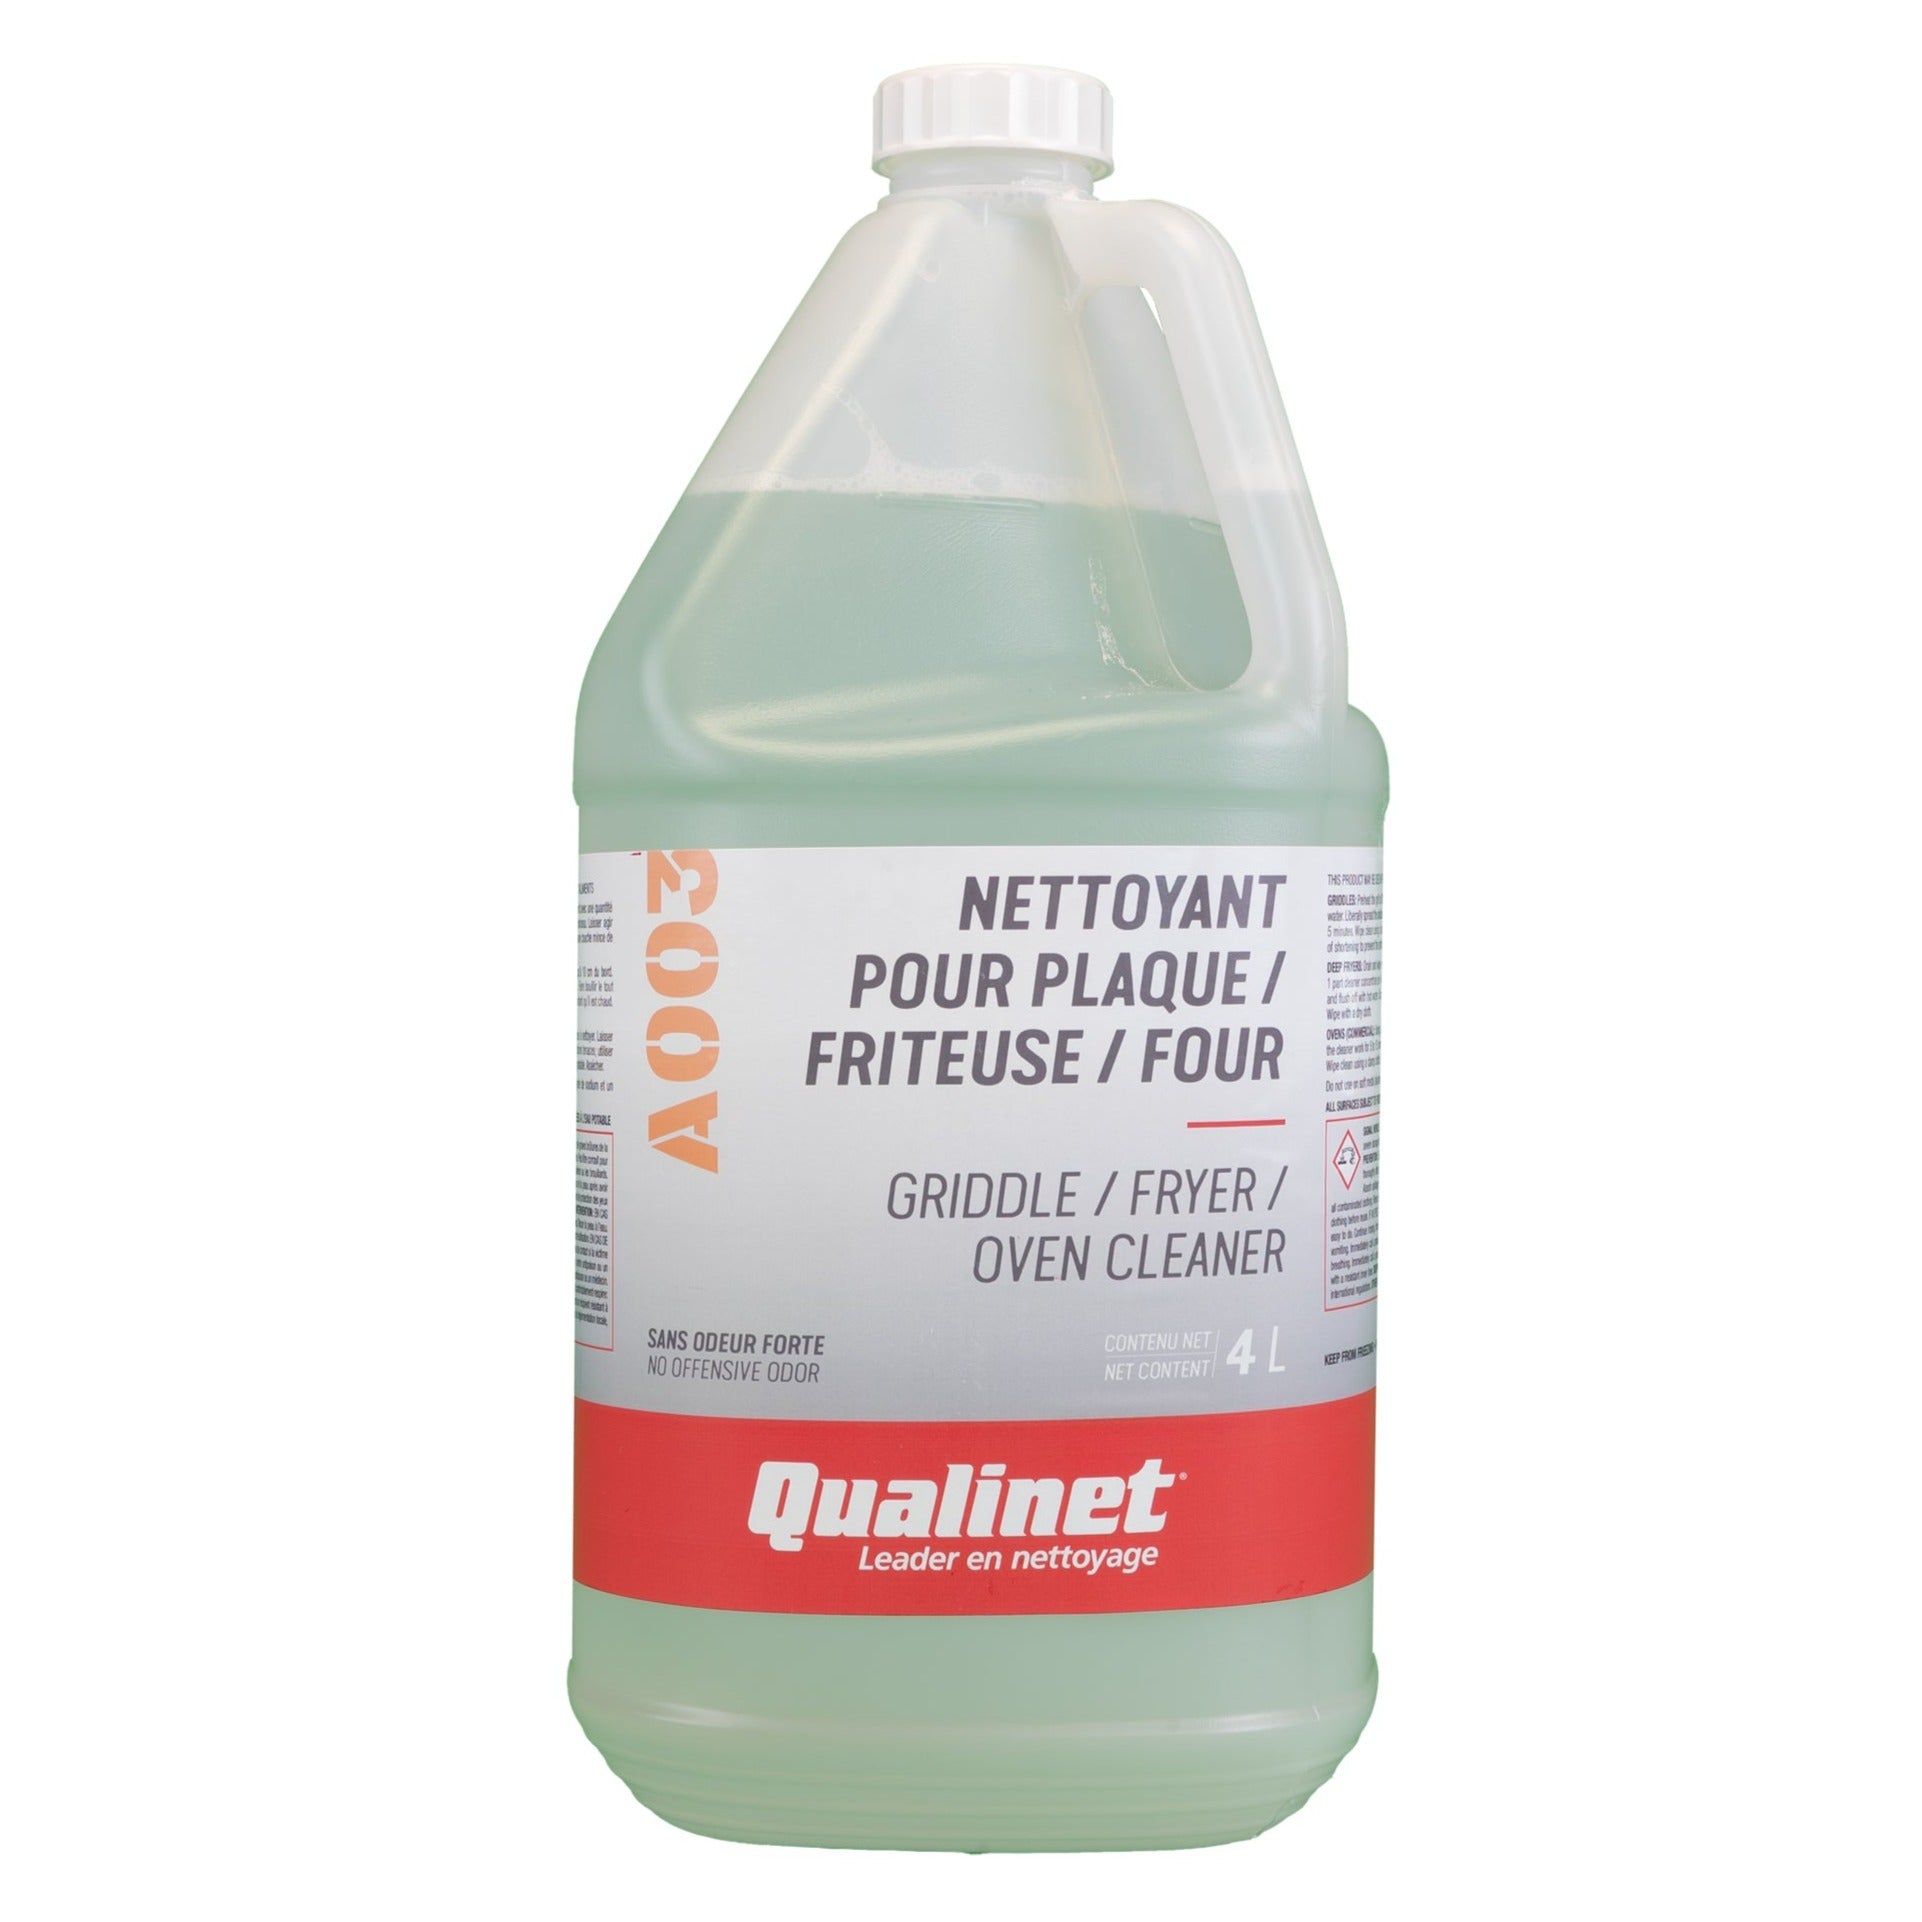 Nettoyant pour plaque / friteuse / four (2 formats) - U003 - Miranet